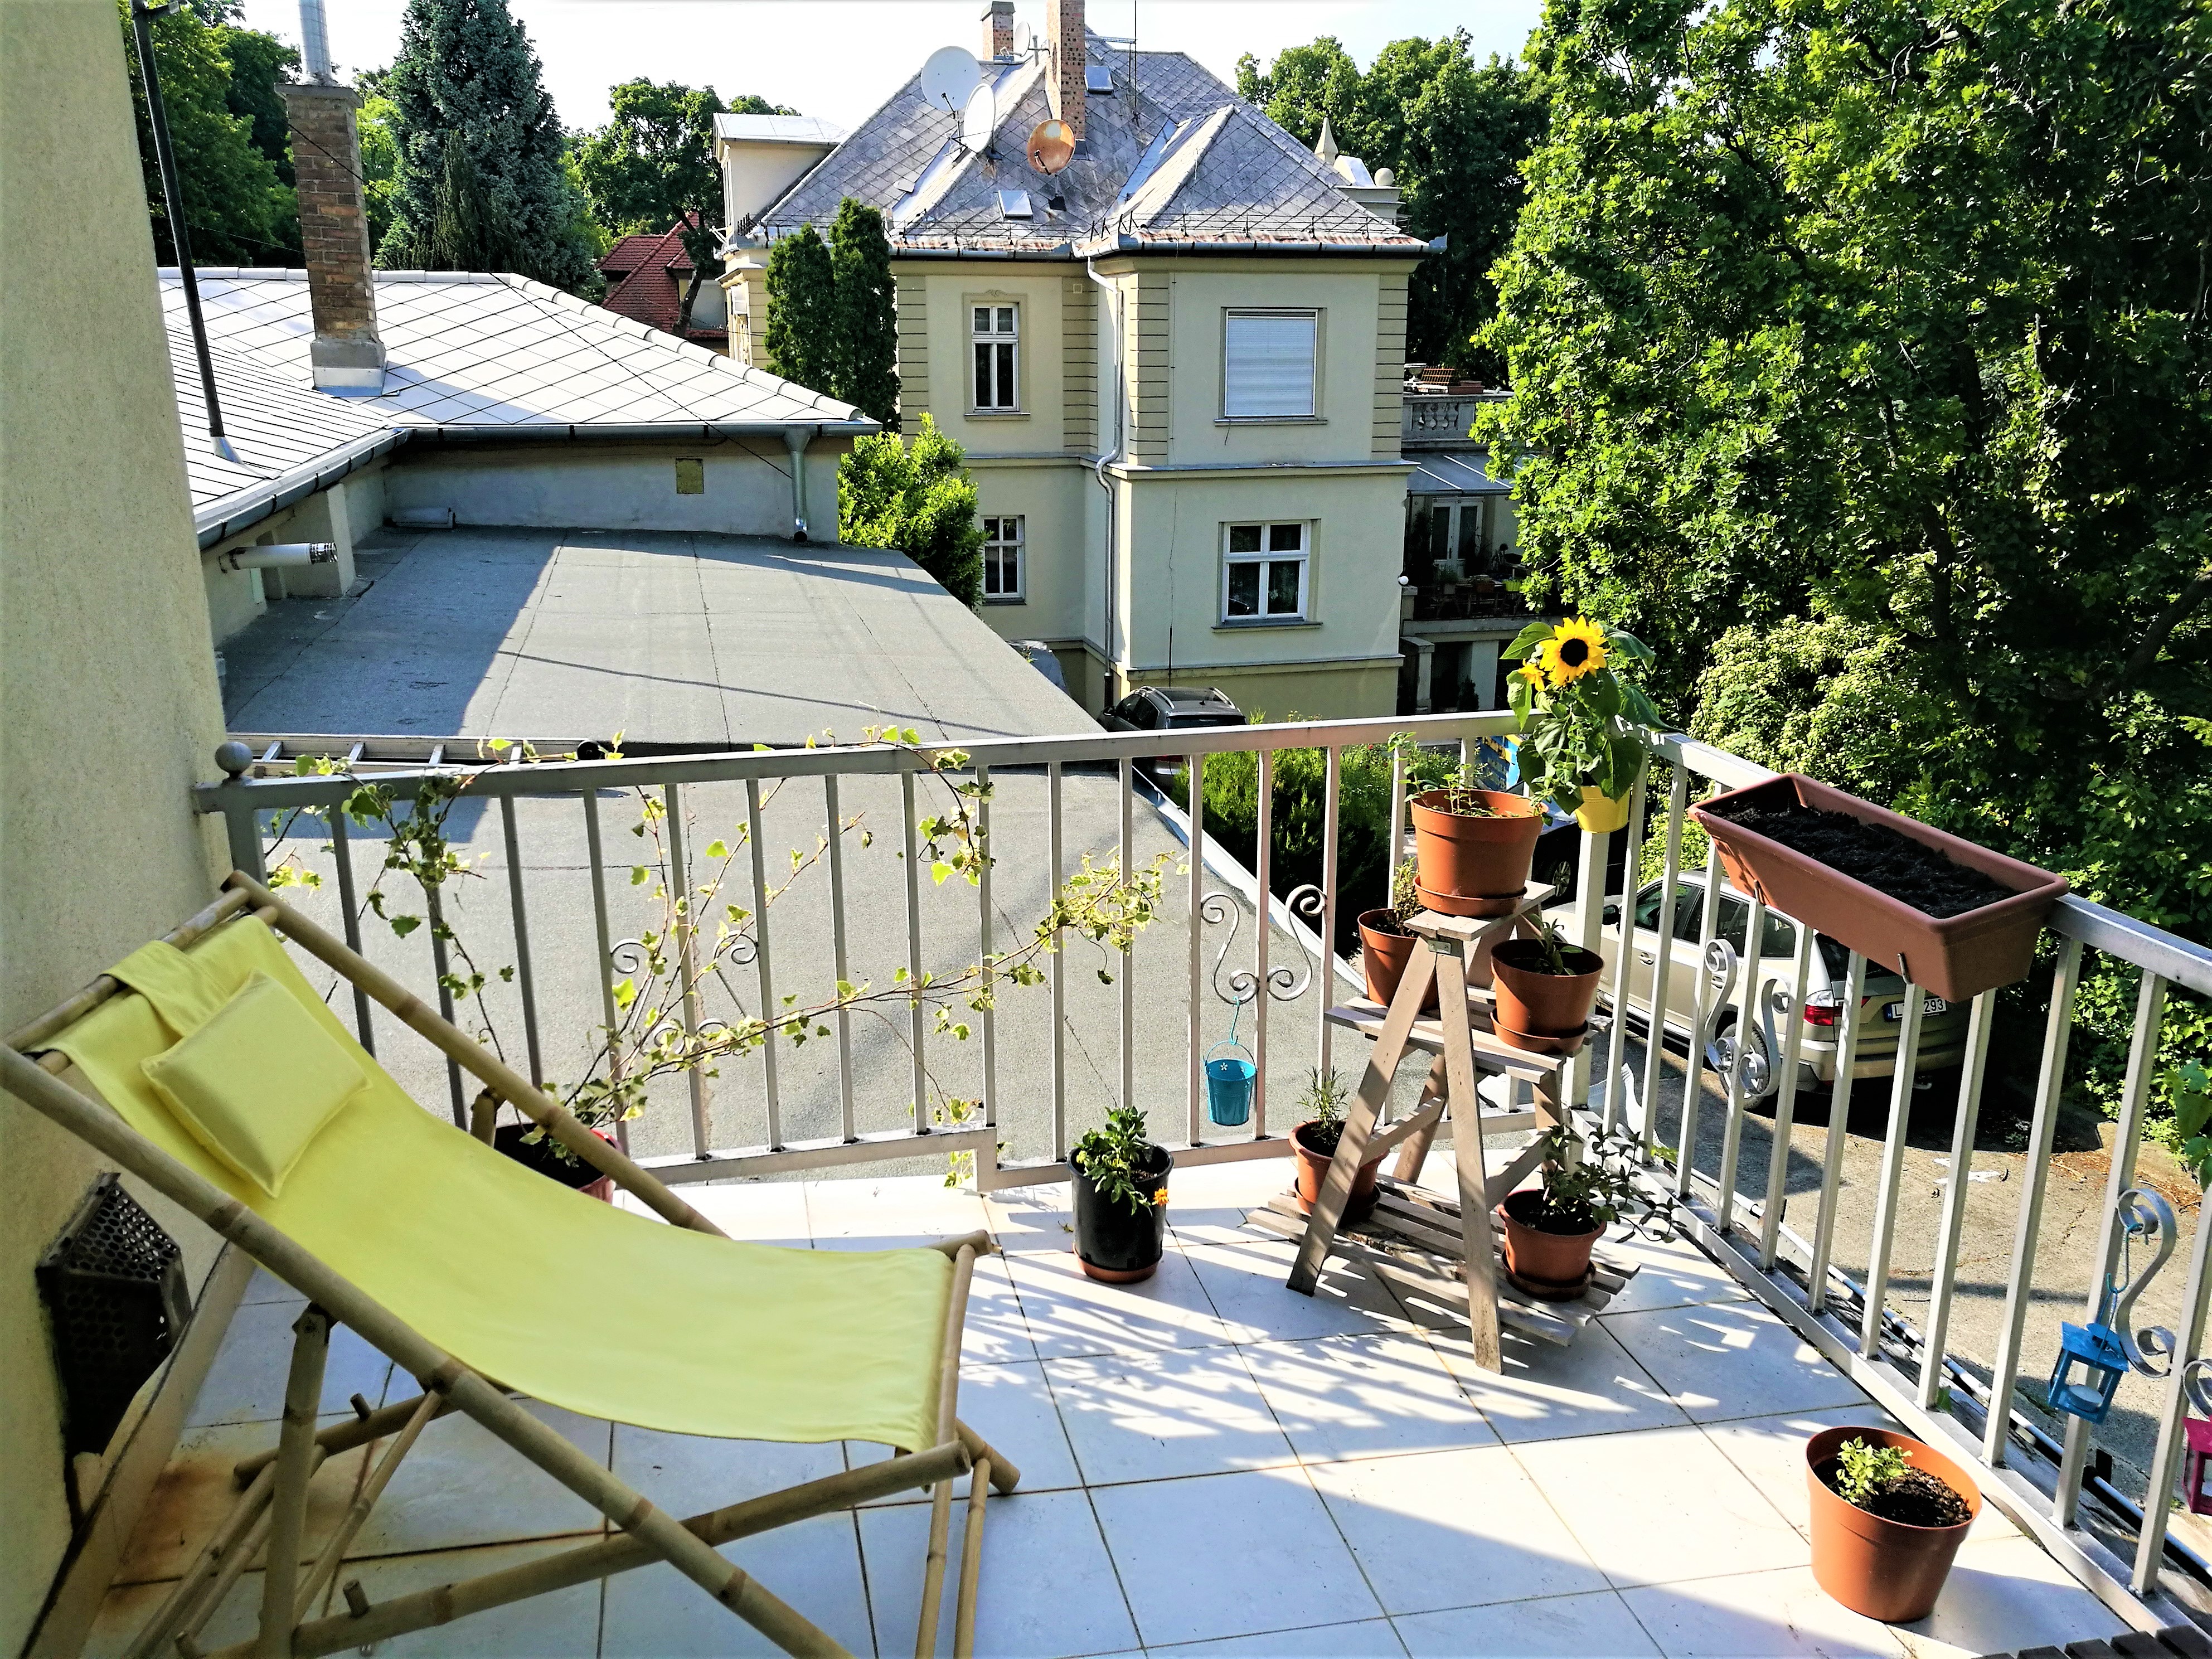 Erkélyzöldítő projekt az egykori Rákosi-villa kertjében – Mimi erkélye